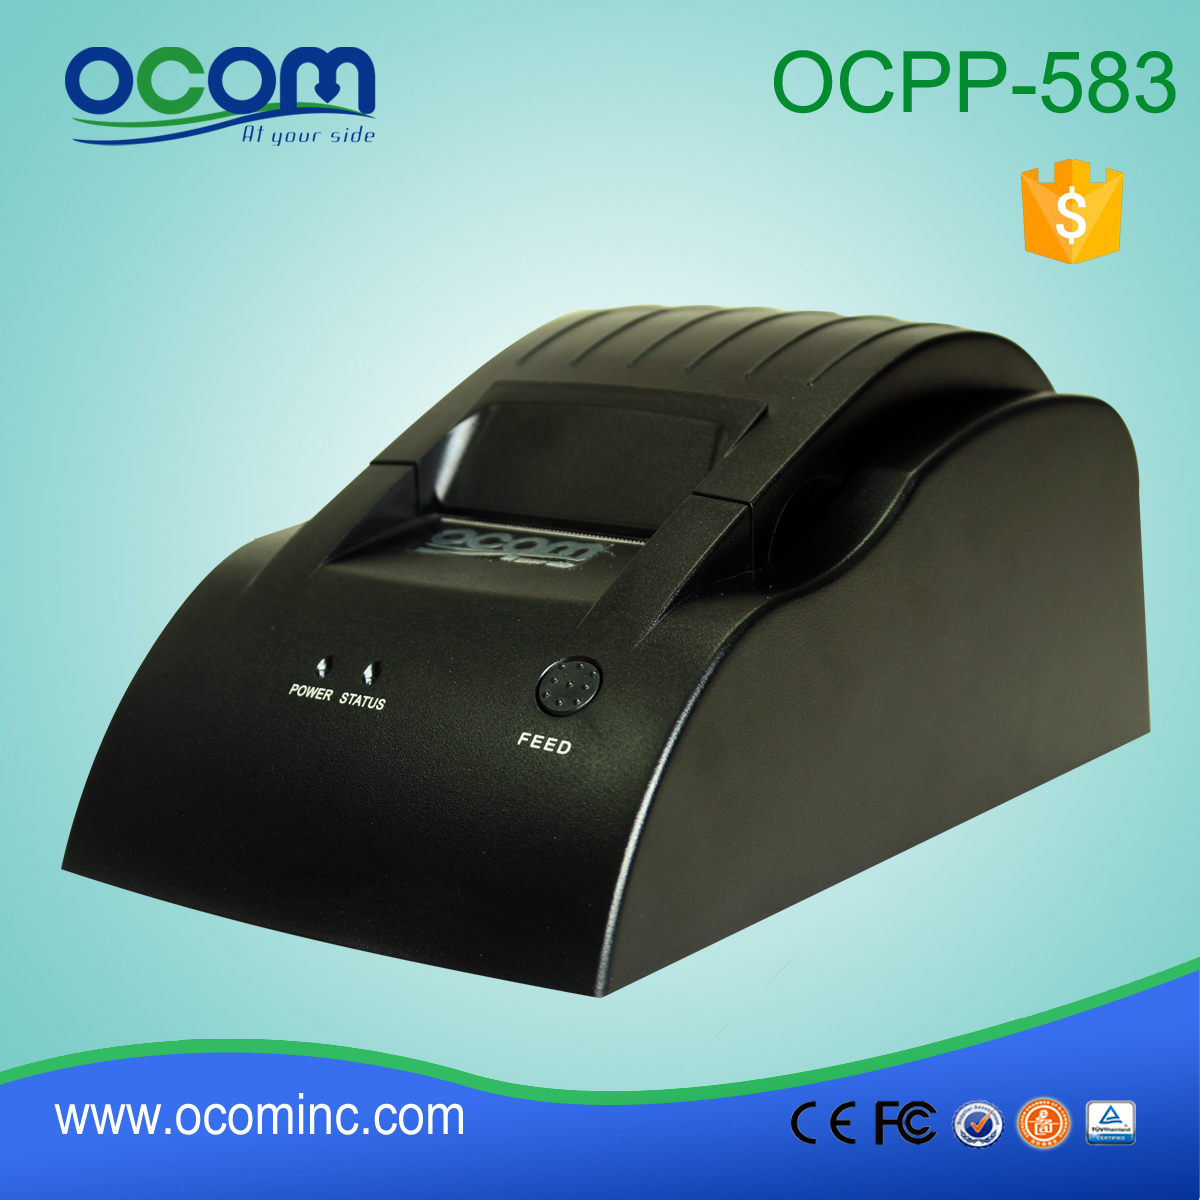 OCPP-583-L Desktop 58mm Θερμικός εκτυπωτής εισερχόμενου POS LAN